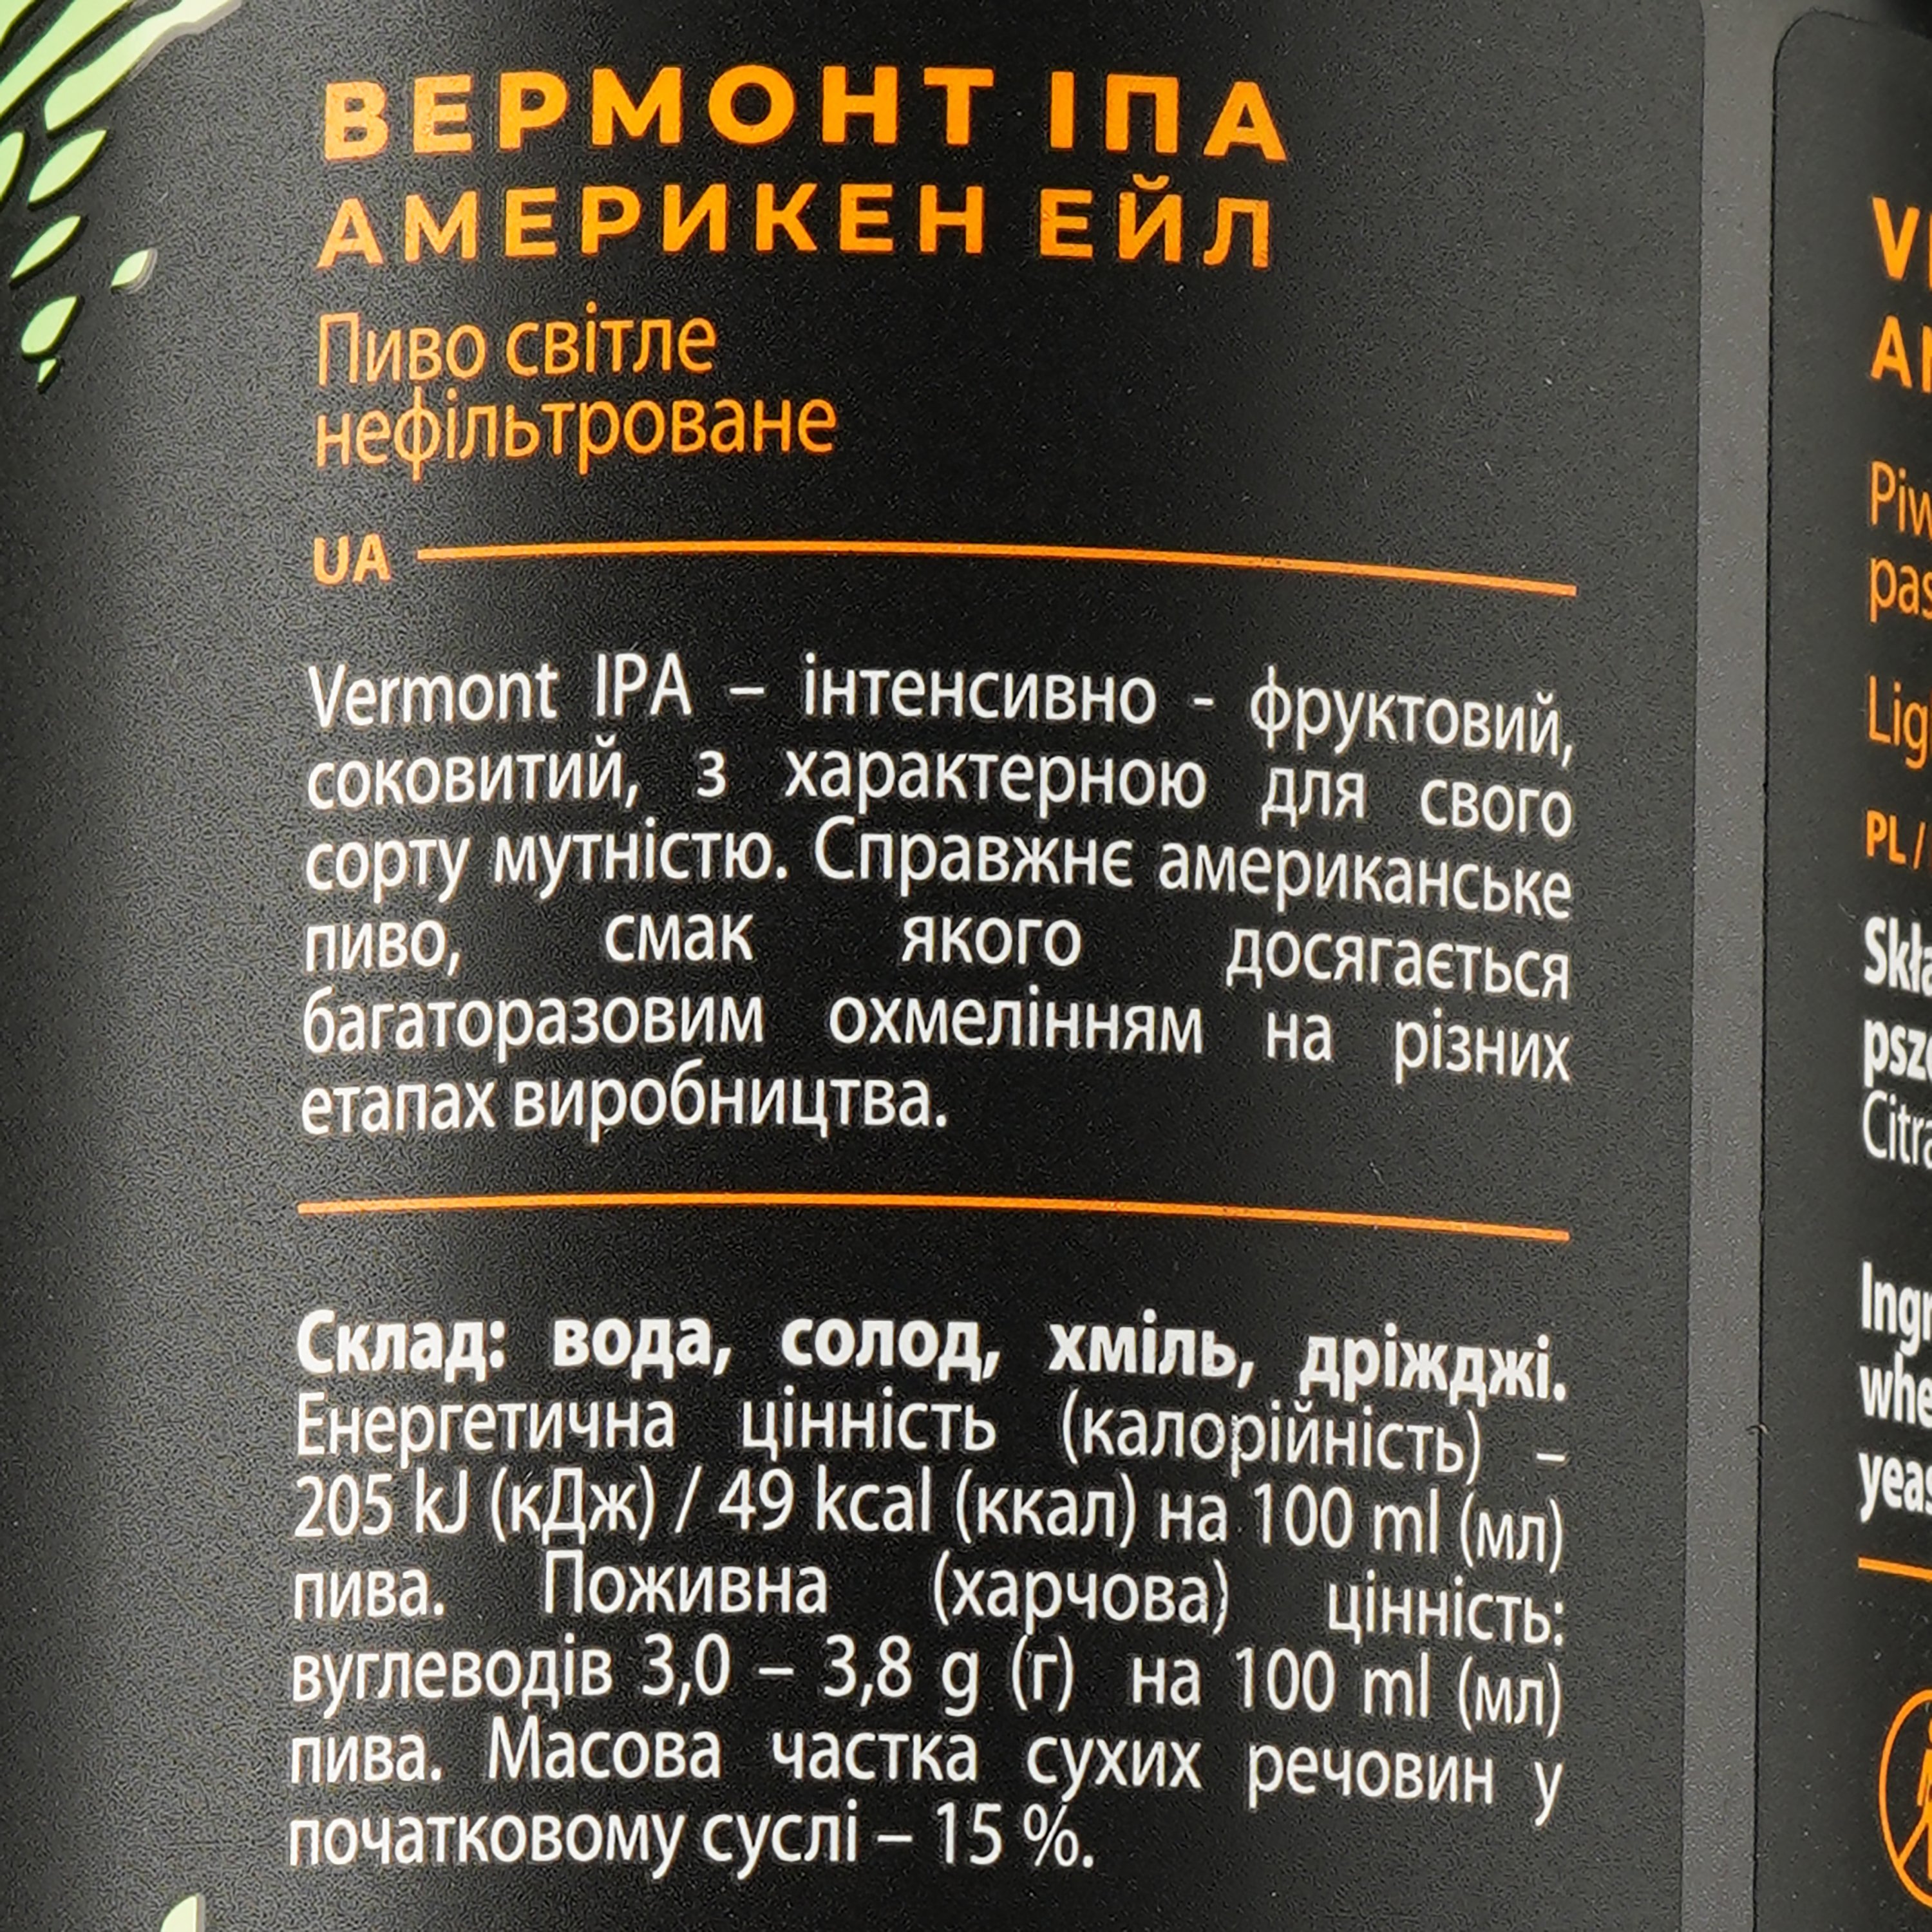 Пиво Volynski Browar Vermont IPA, світле, нефільтроване, 5,9%, з/б, 0,5 л - фото 3